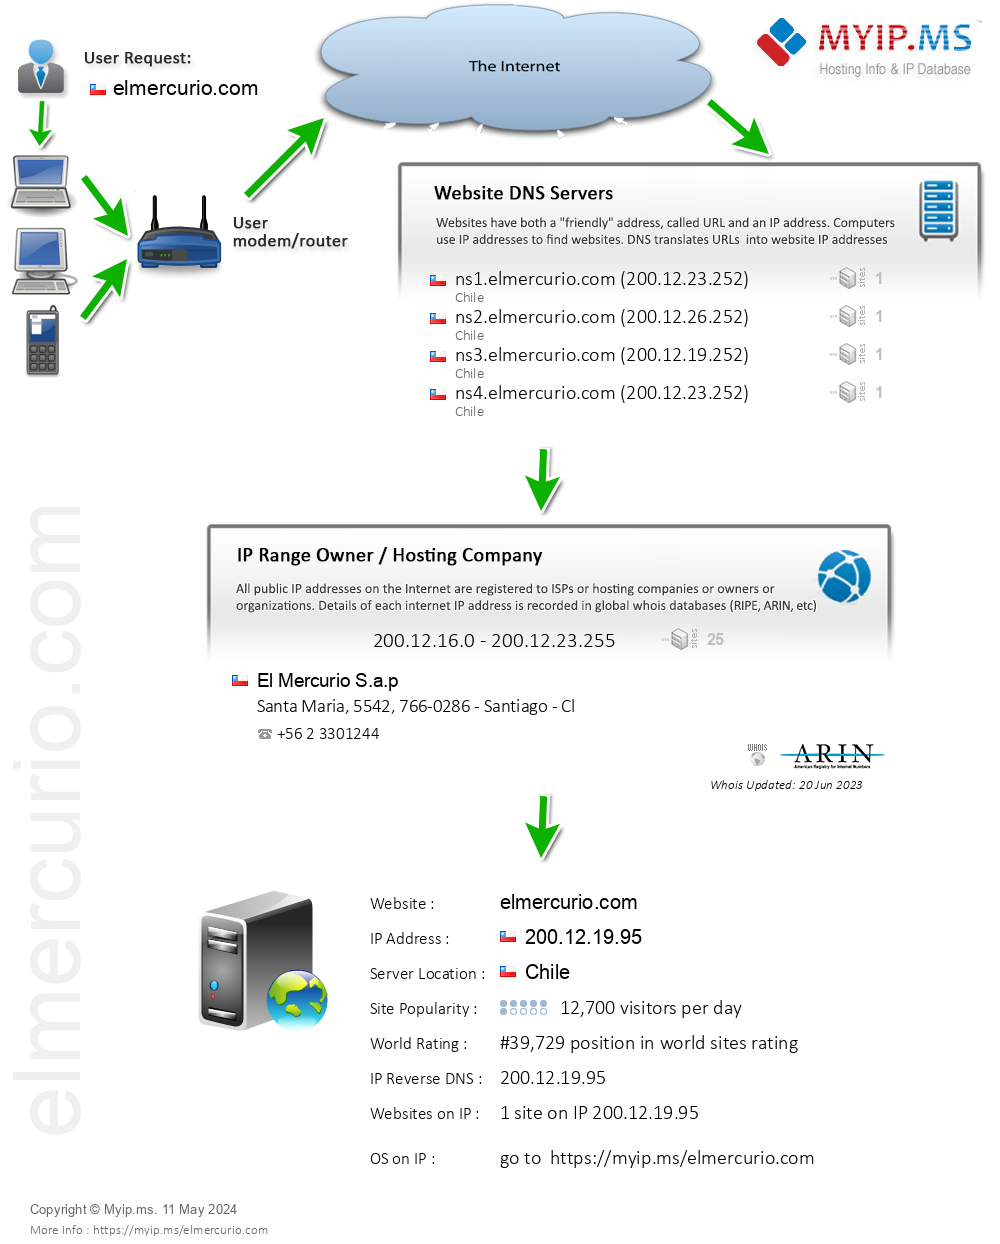 Elmercurio.com - Website Hosting Visual IP Diagram